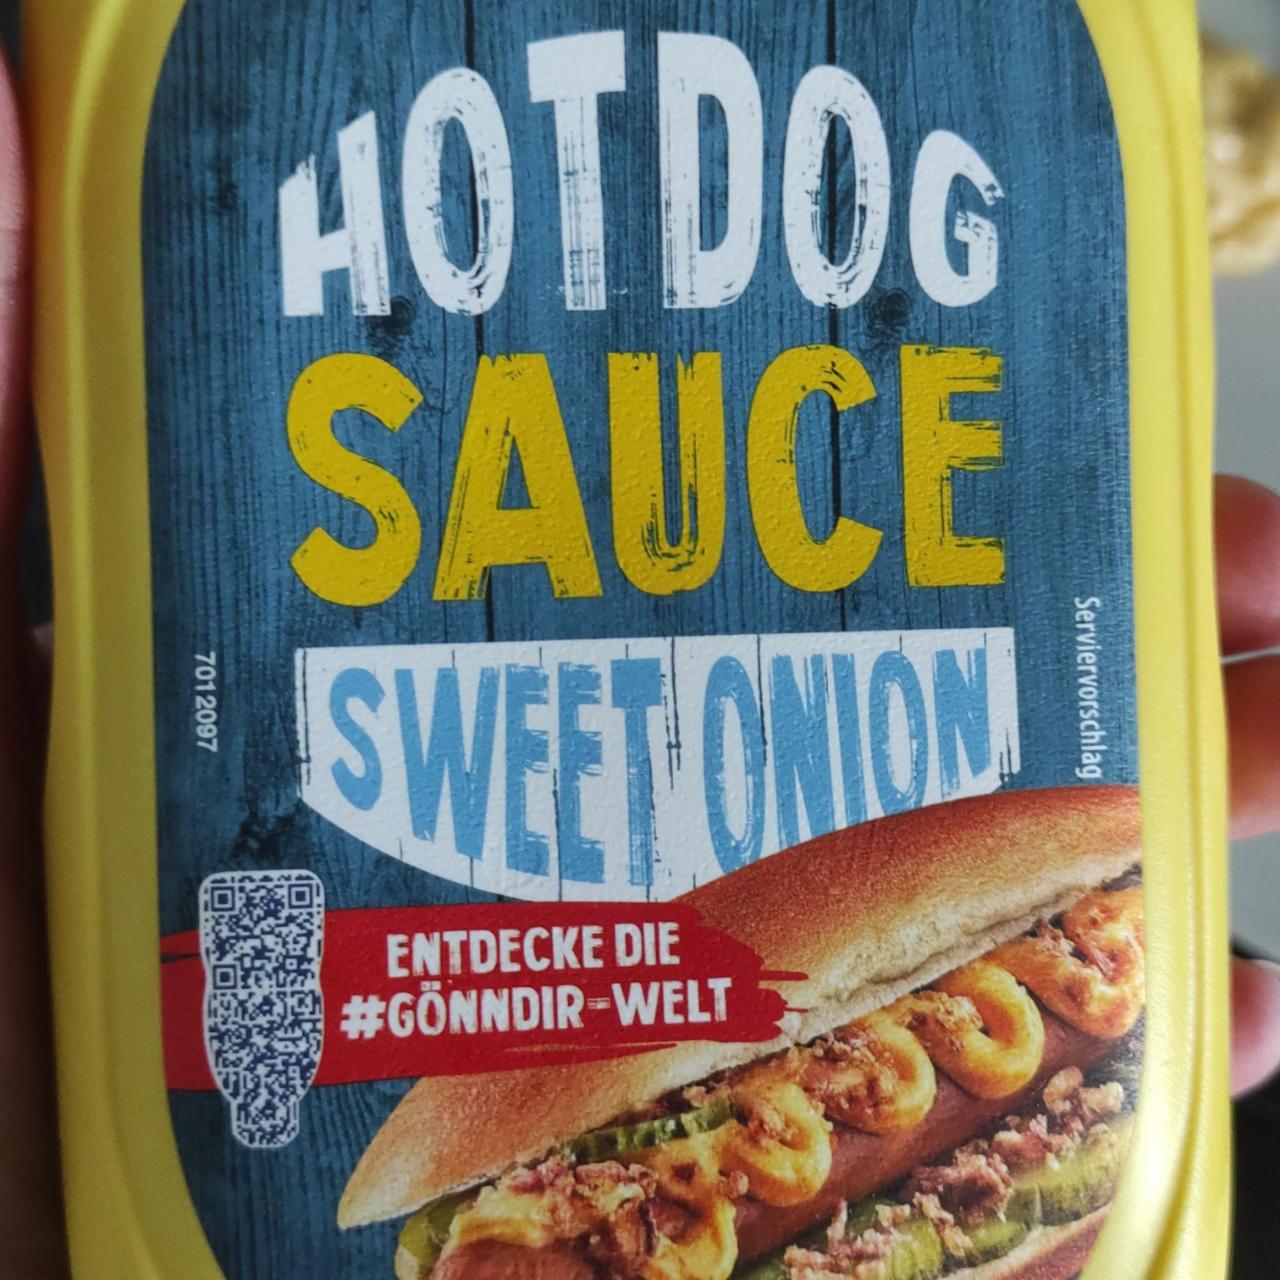 Fotografie - Hot dog Sauce sweet onion Homann